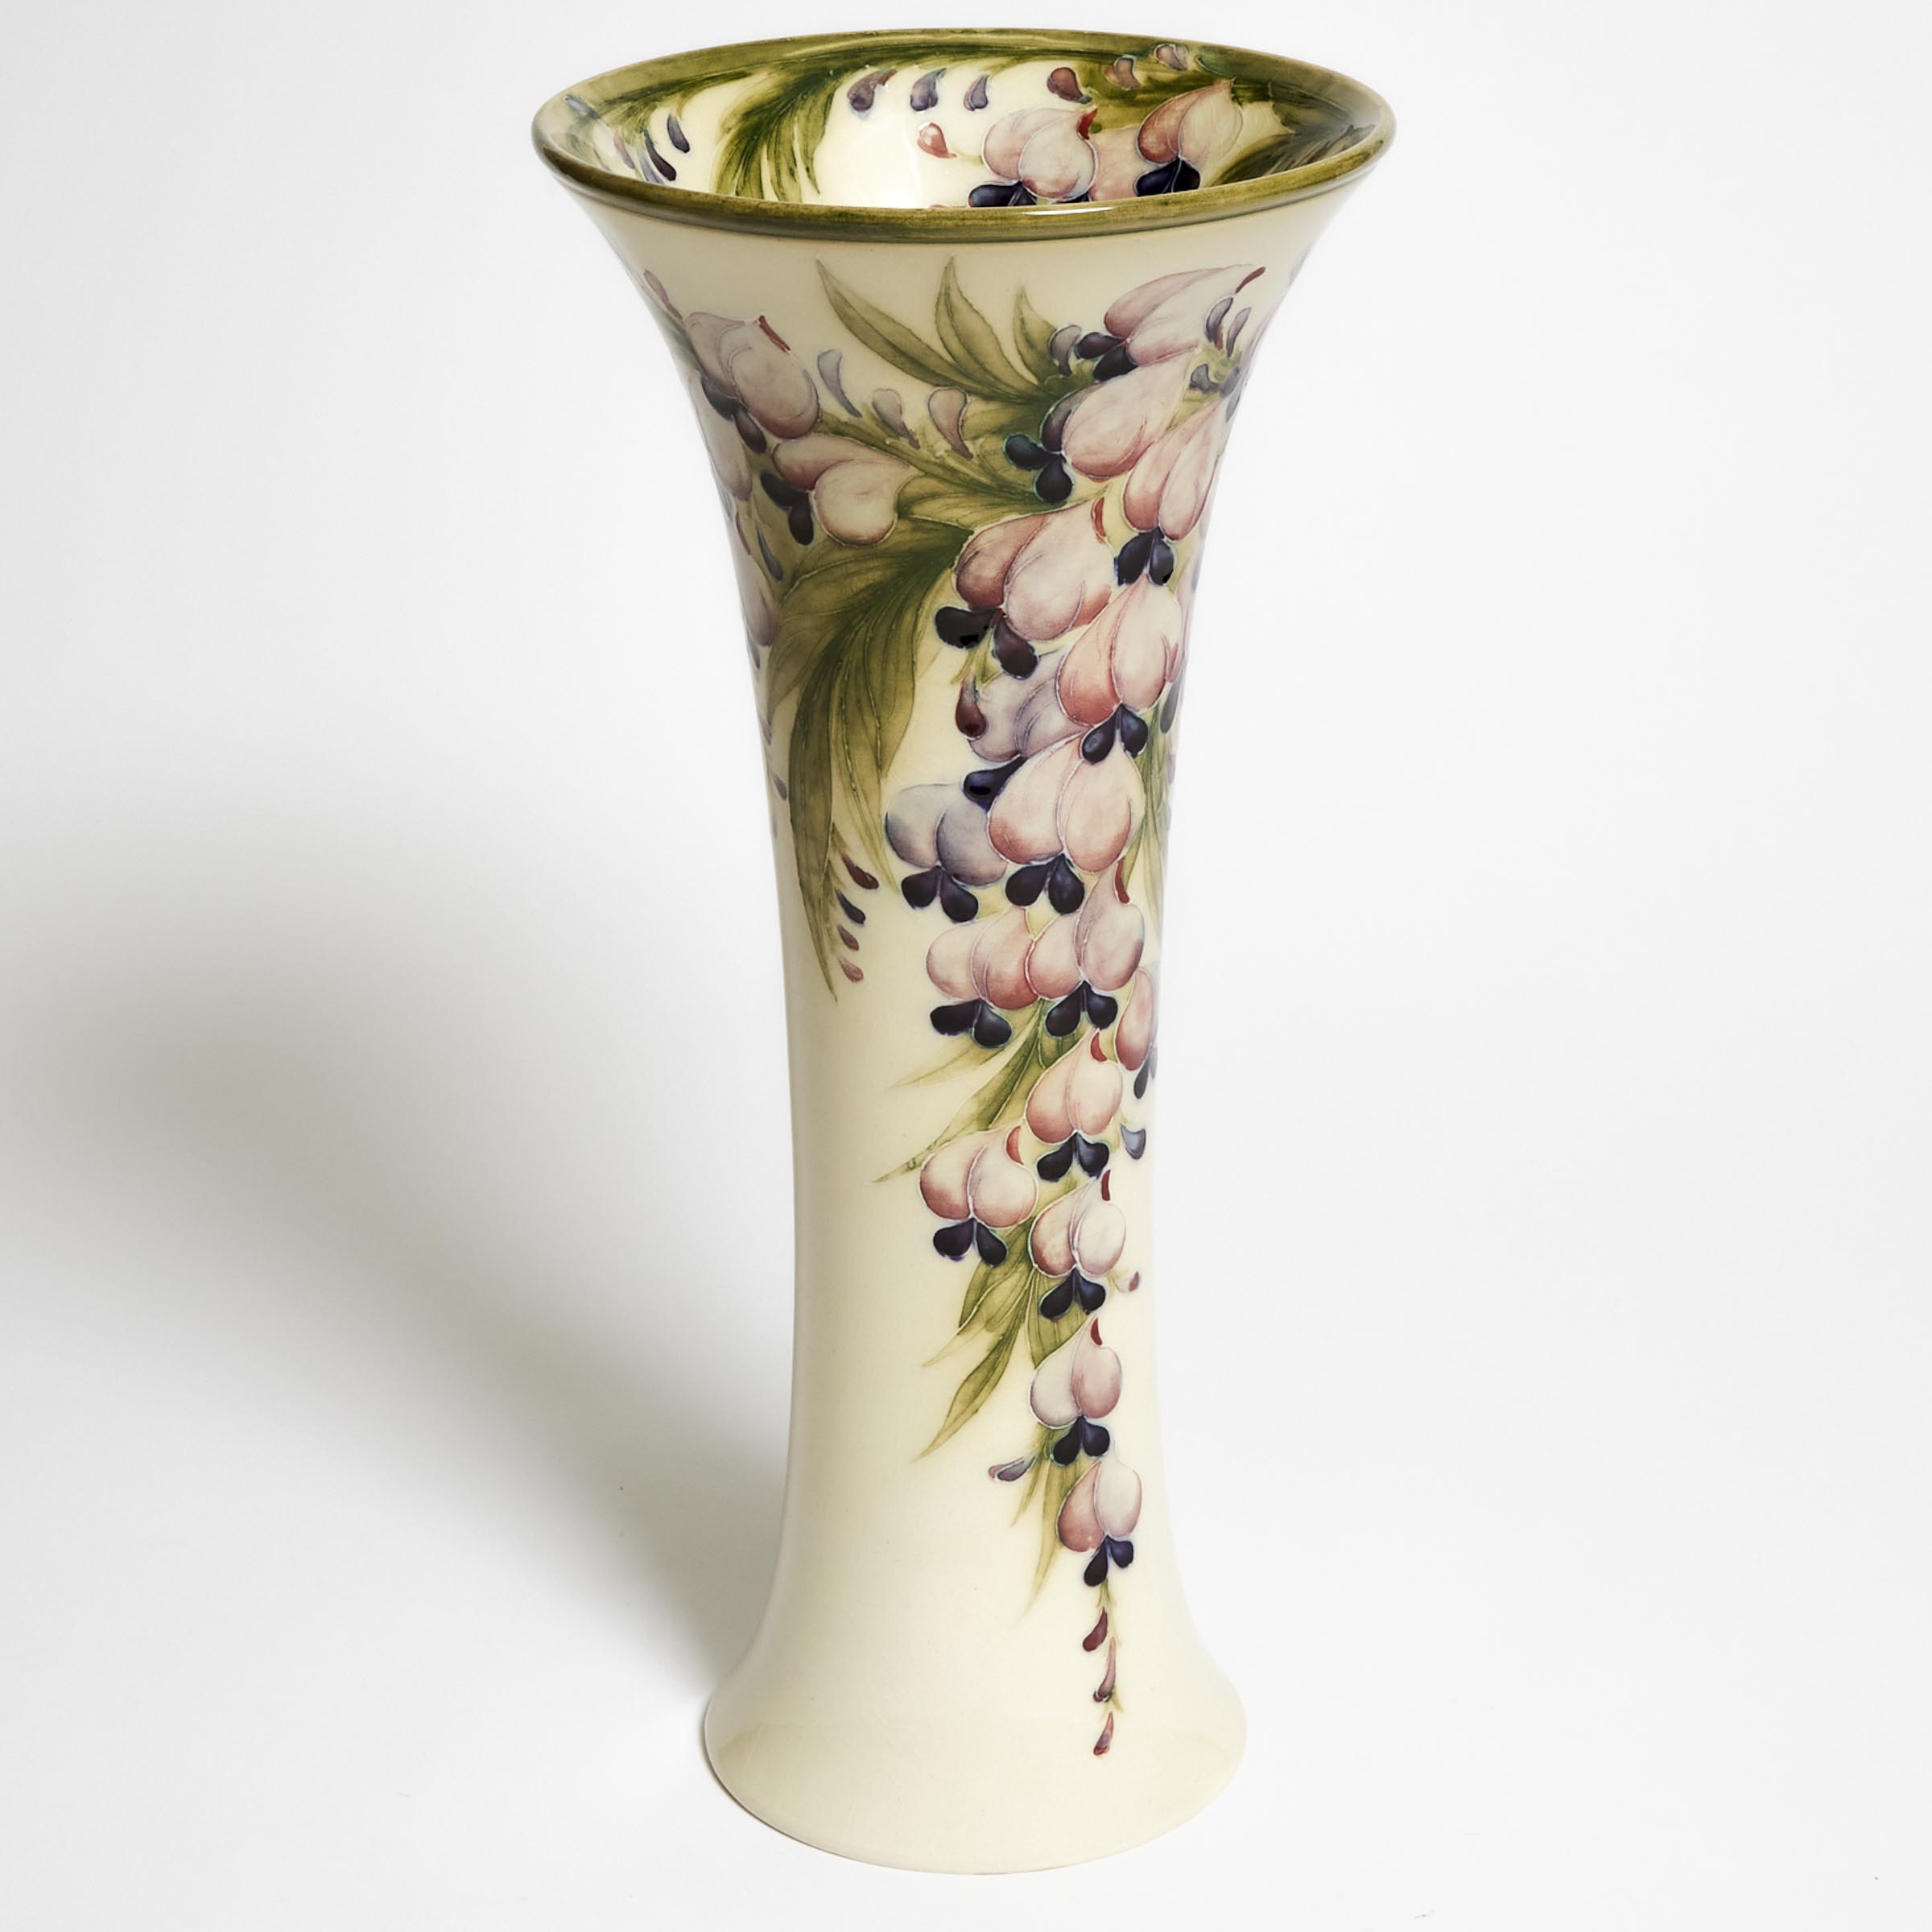 Macintyre Moorcroft Wisteria Large Vase, c.1912